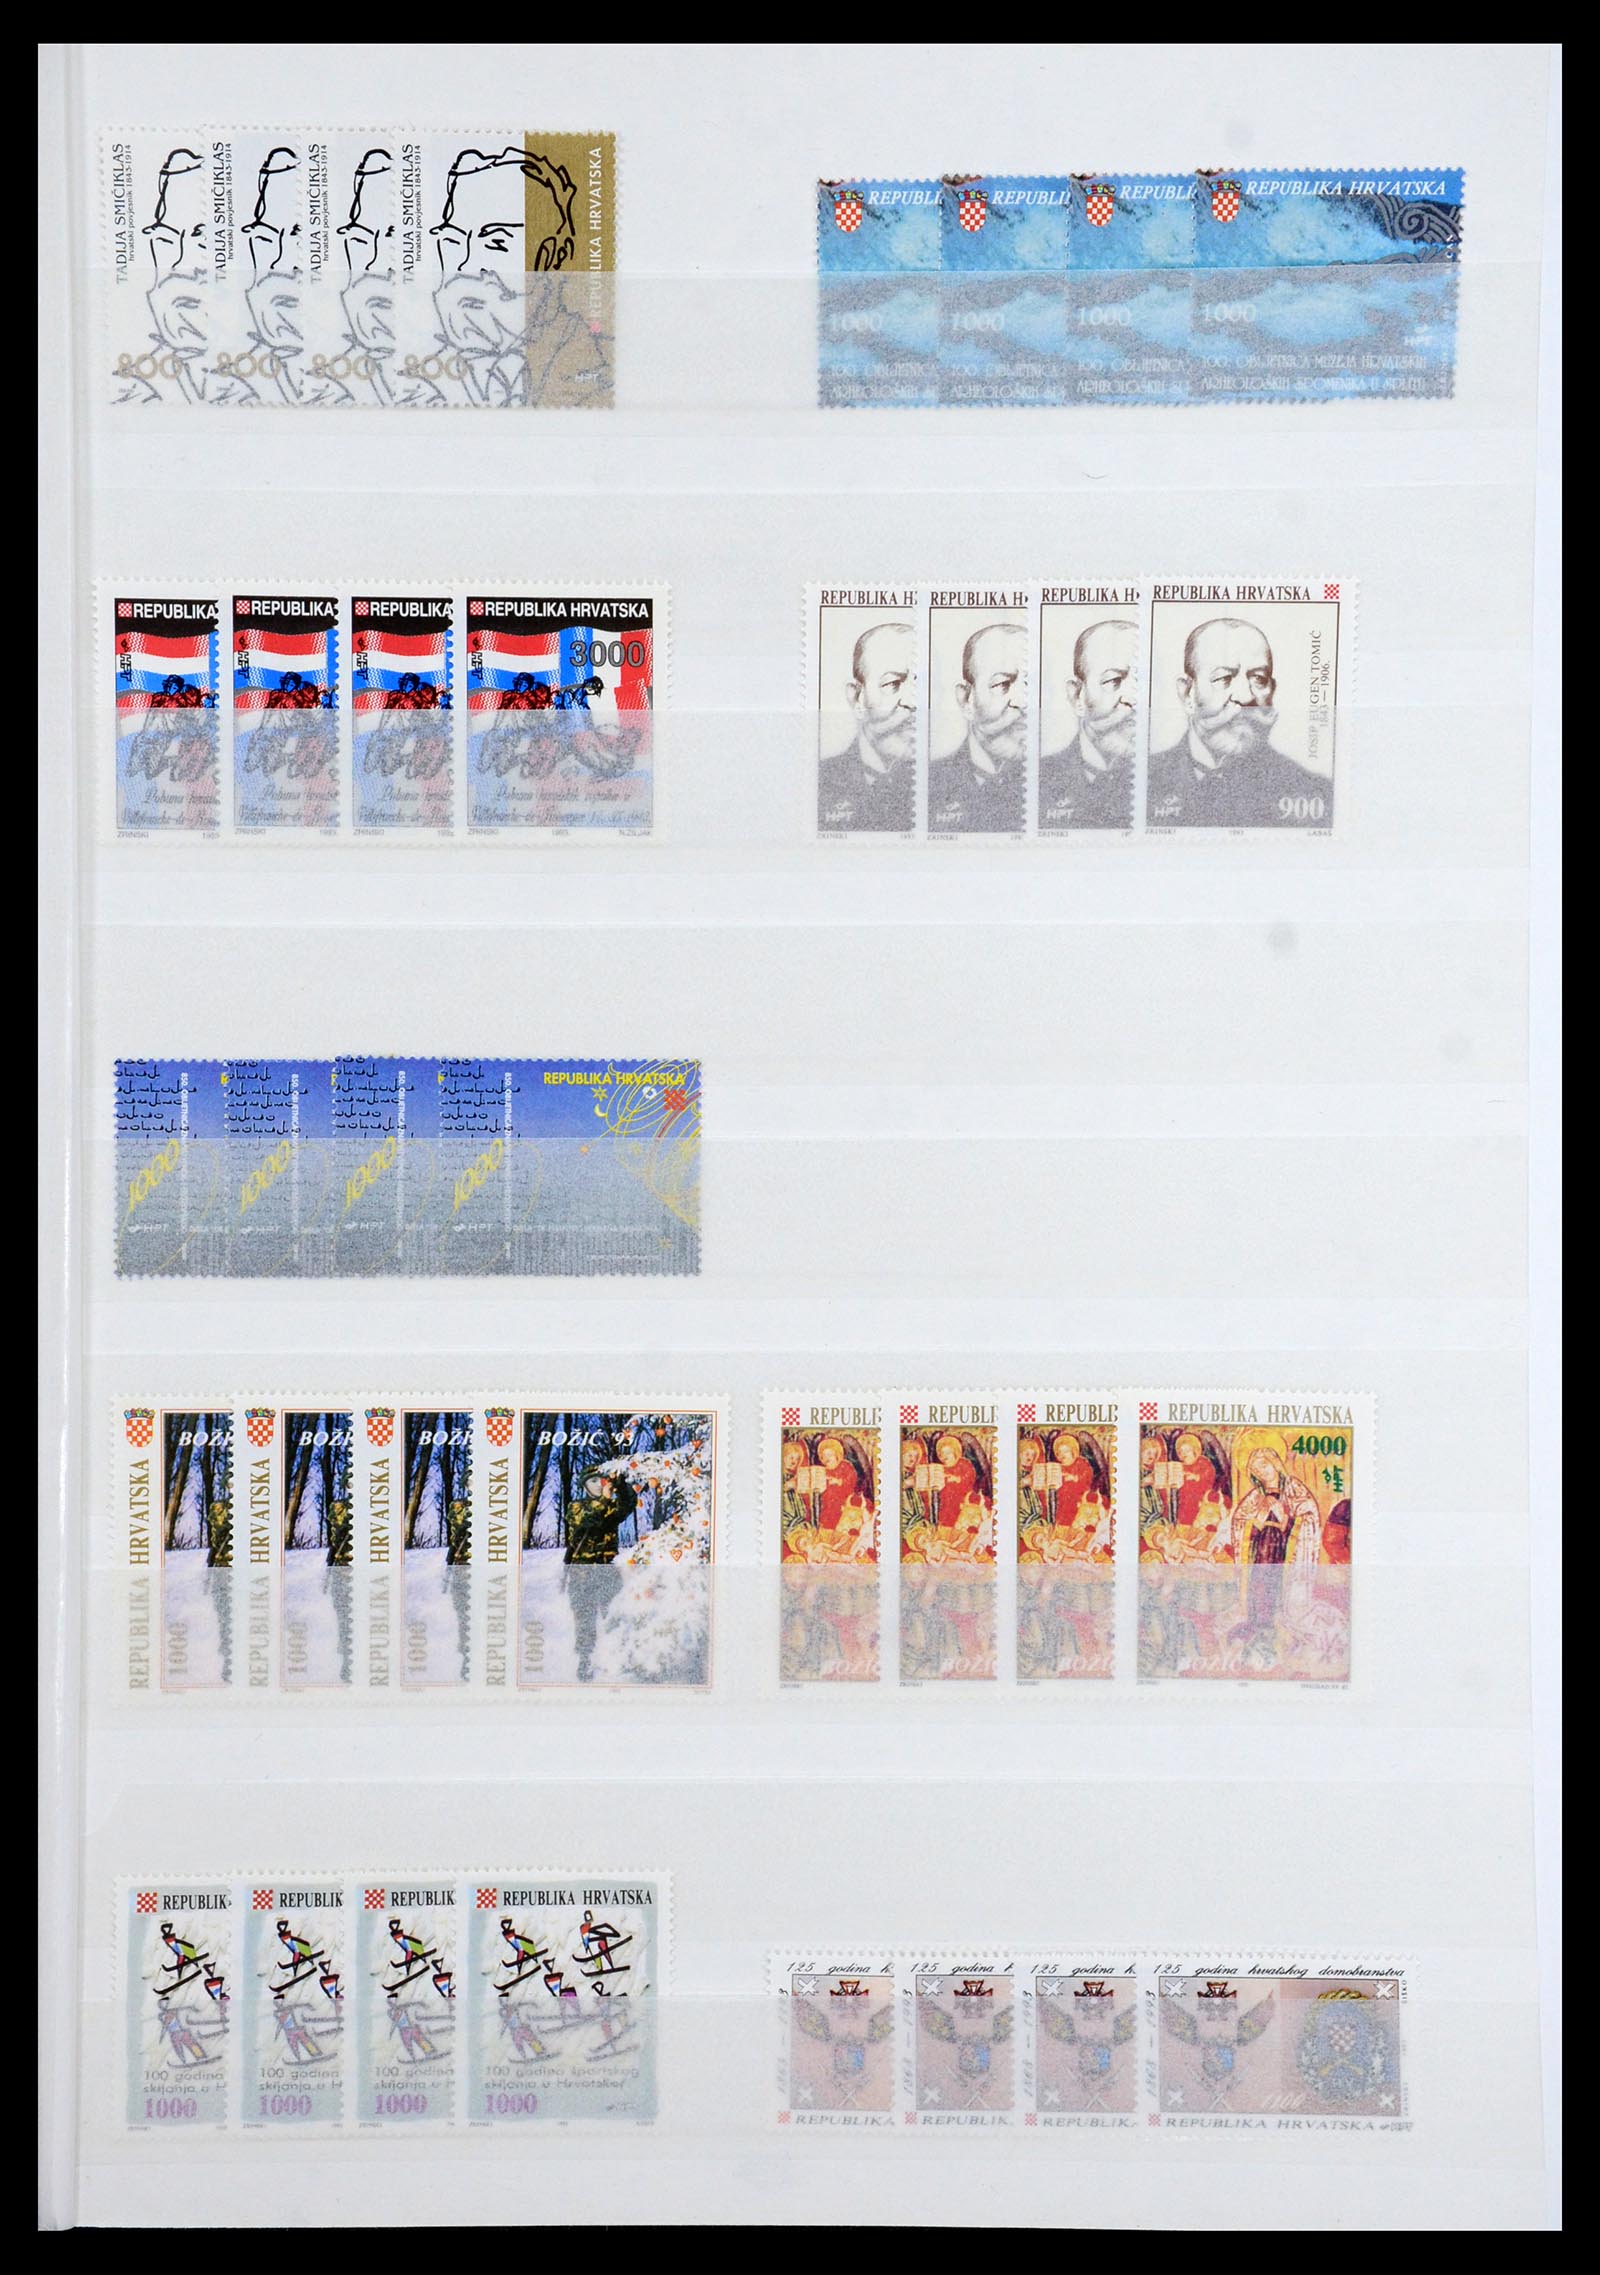 36461 037 - Stamp collection 36461 Slovenia, Croatia and Bosnia-Herzegovina MNH 1991